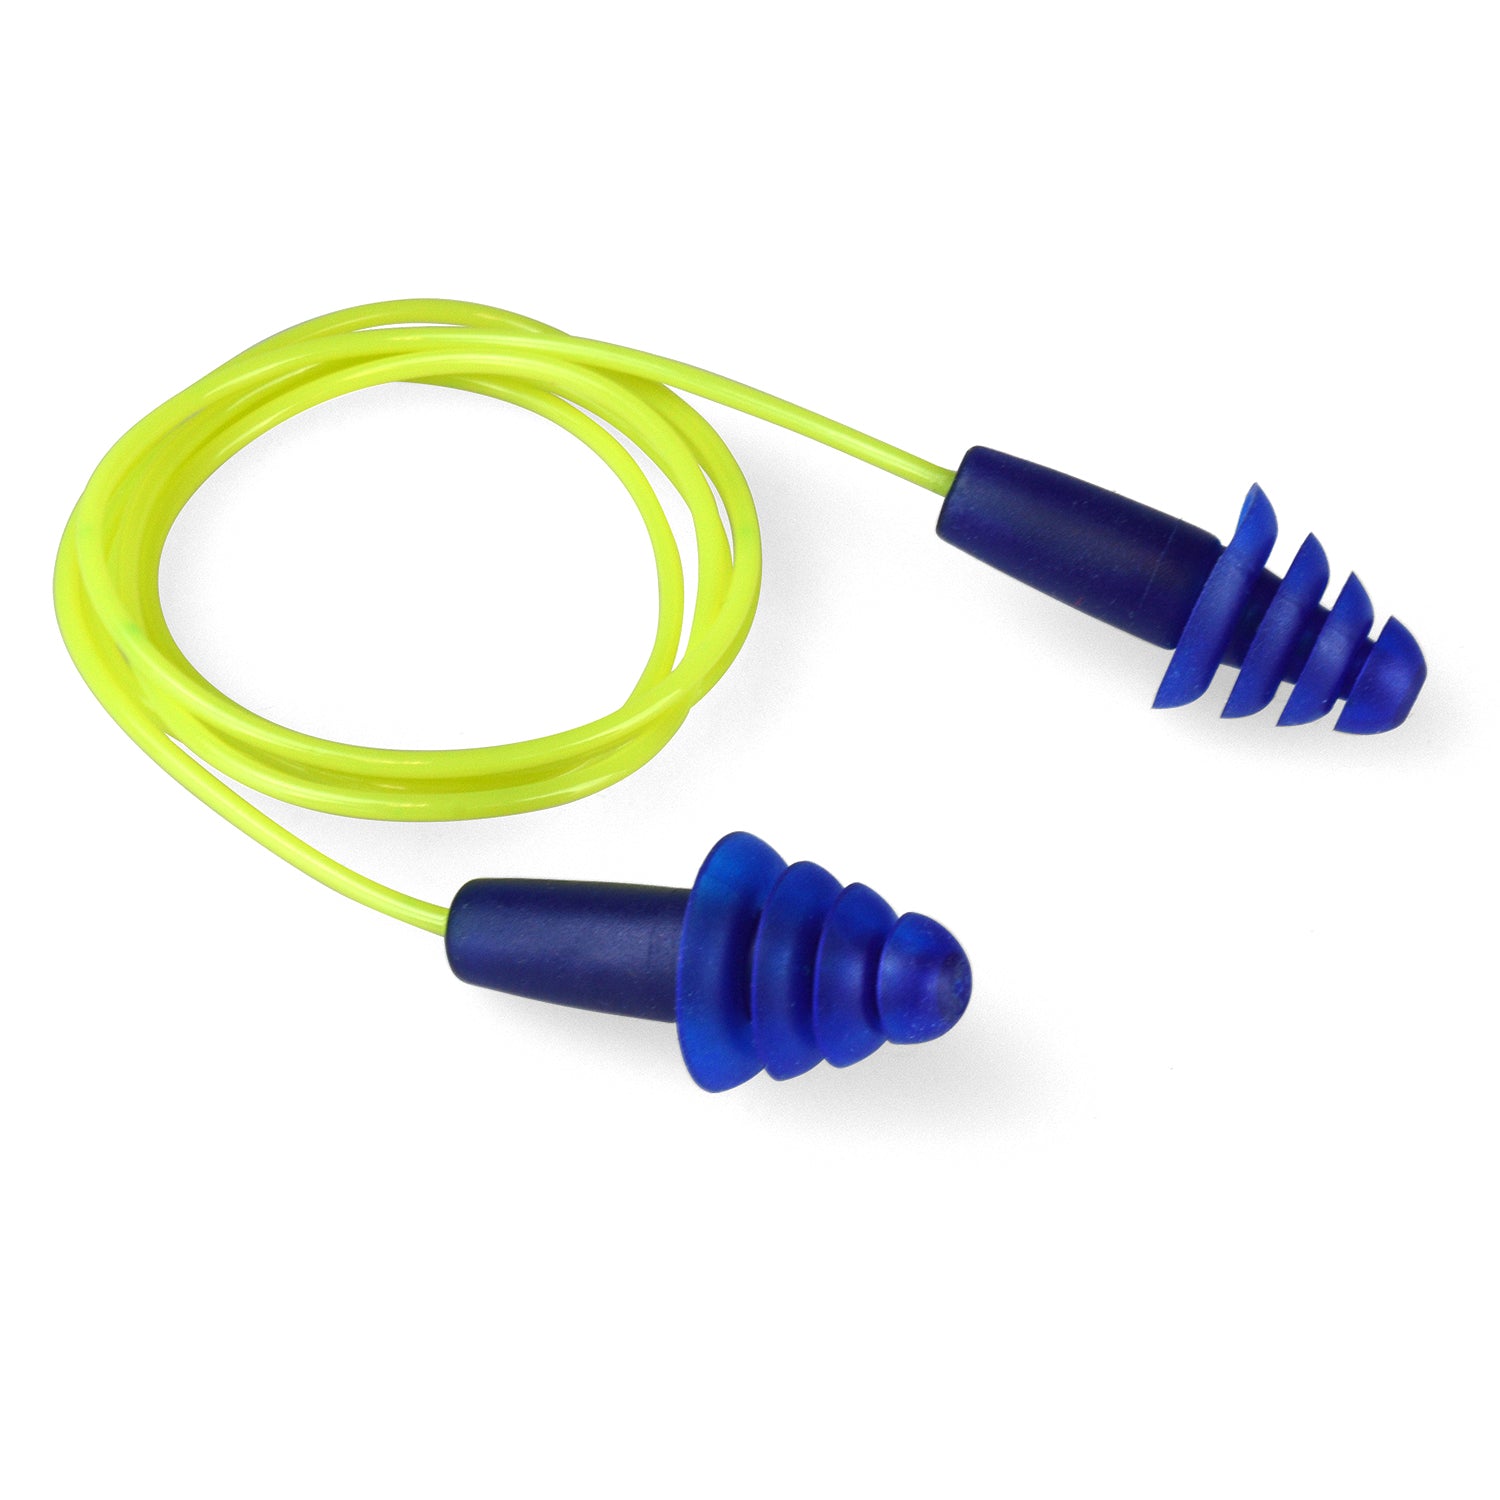 Tapones para los oídos con bridas reutilizables Resistor® II - Con cable